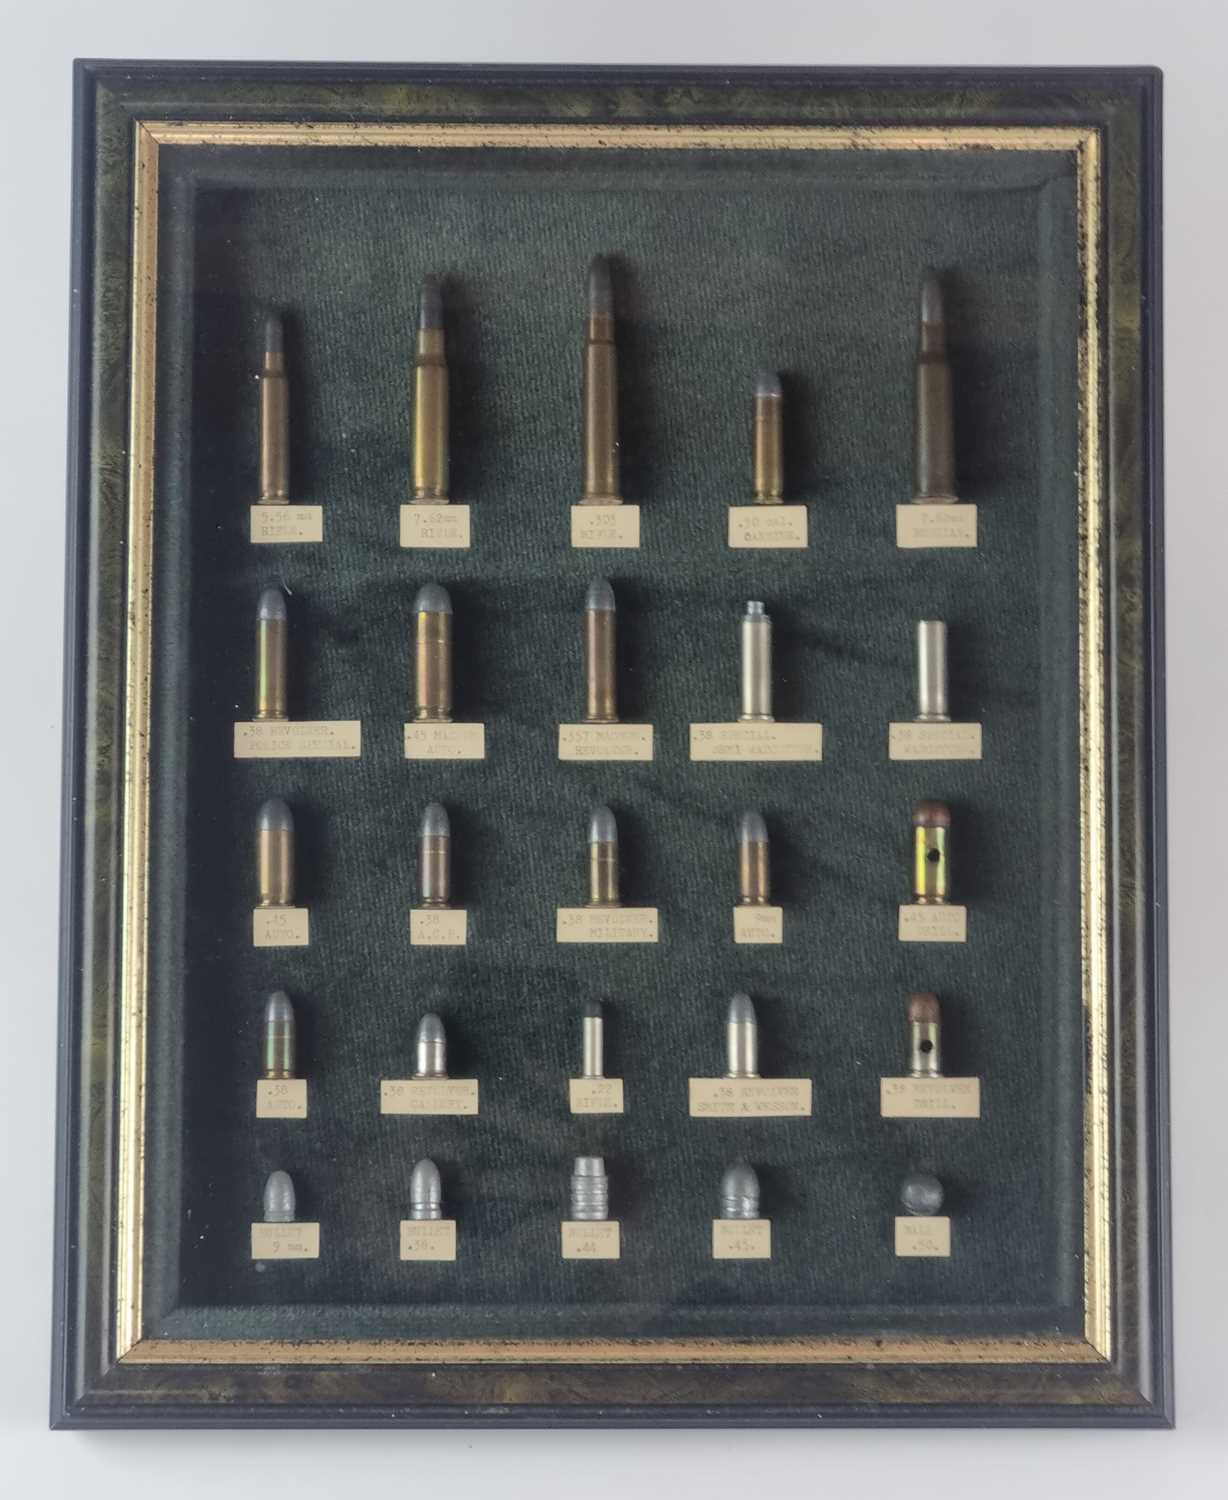 Framed display of inert ammunition - Image 2 of 2